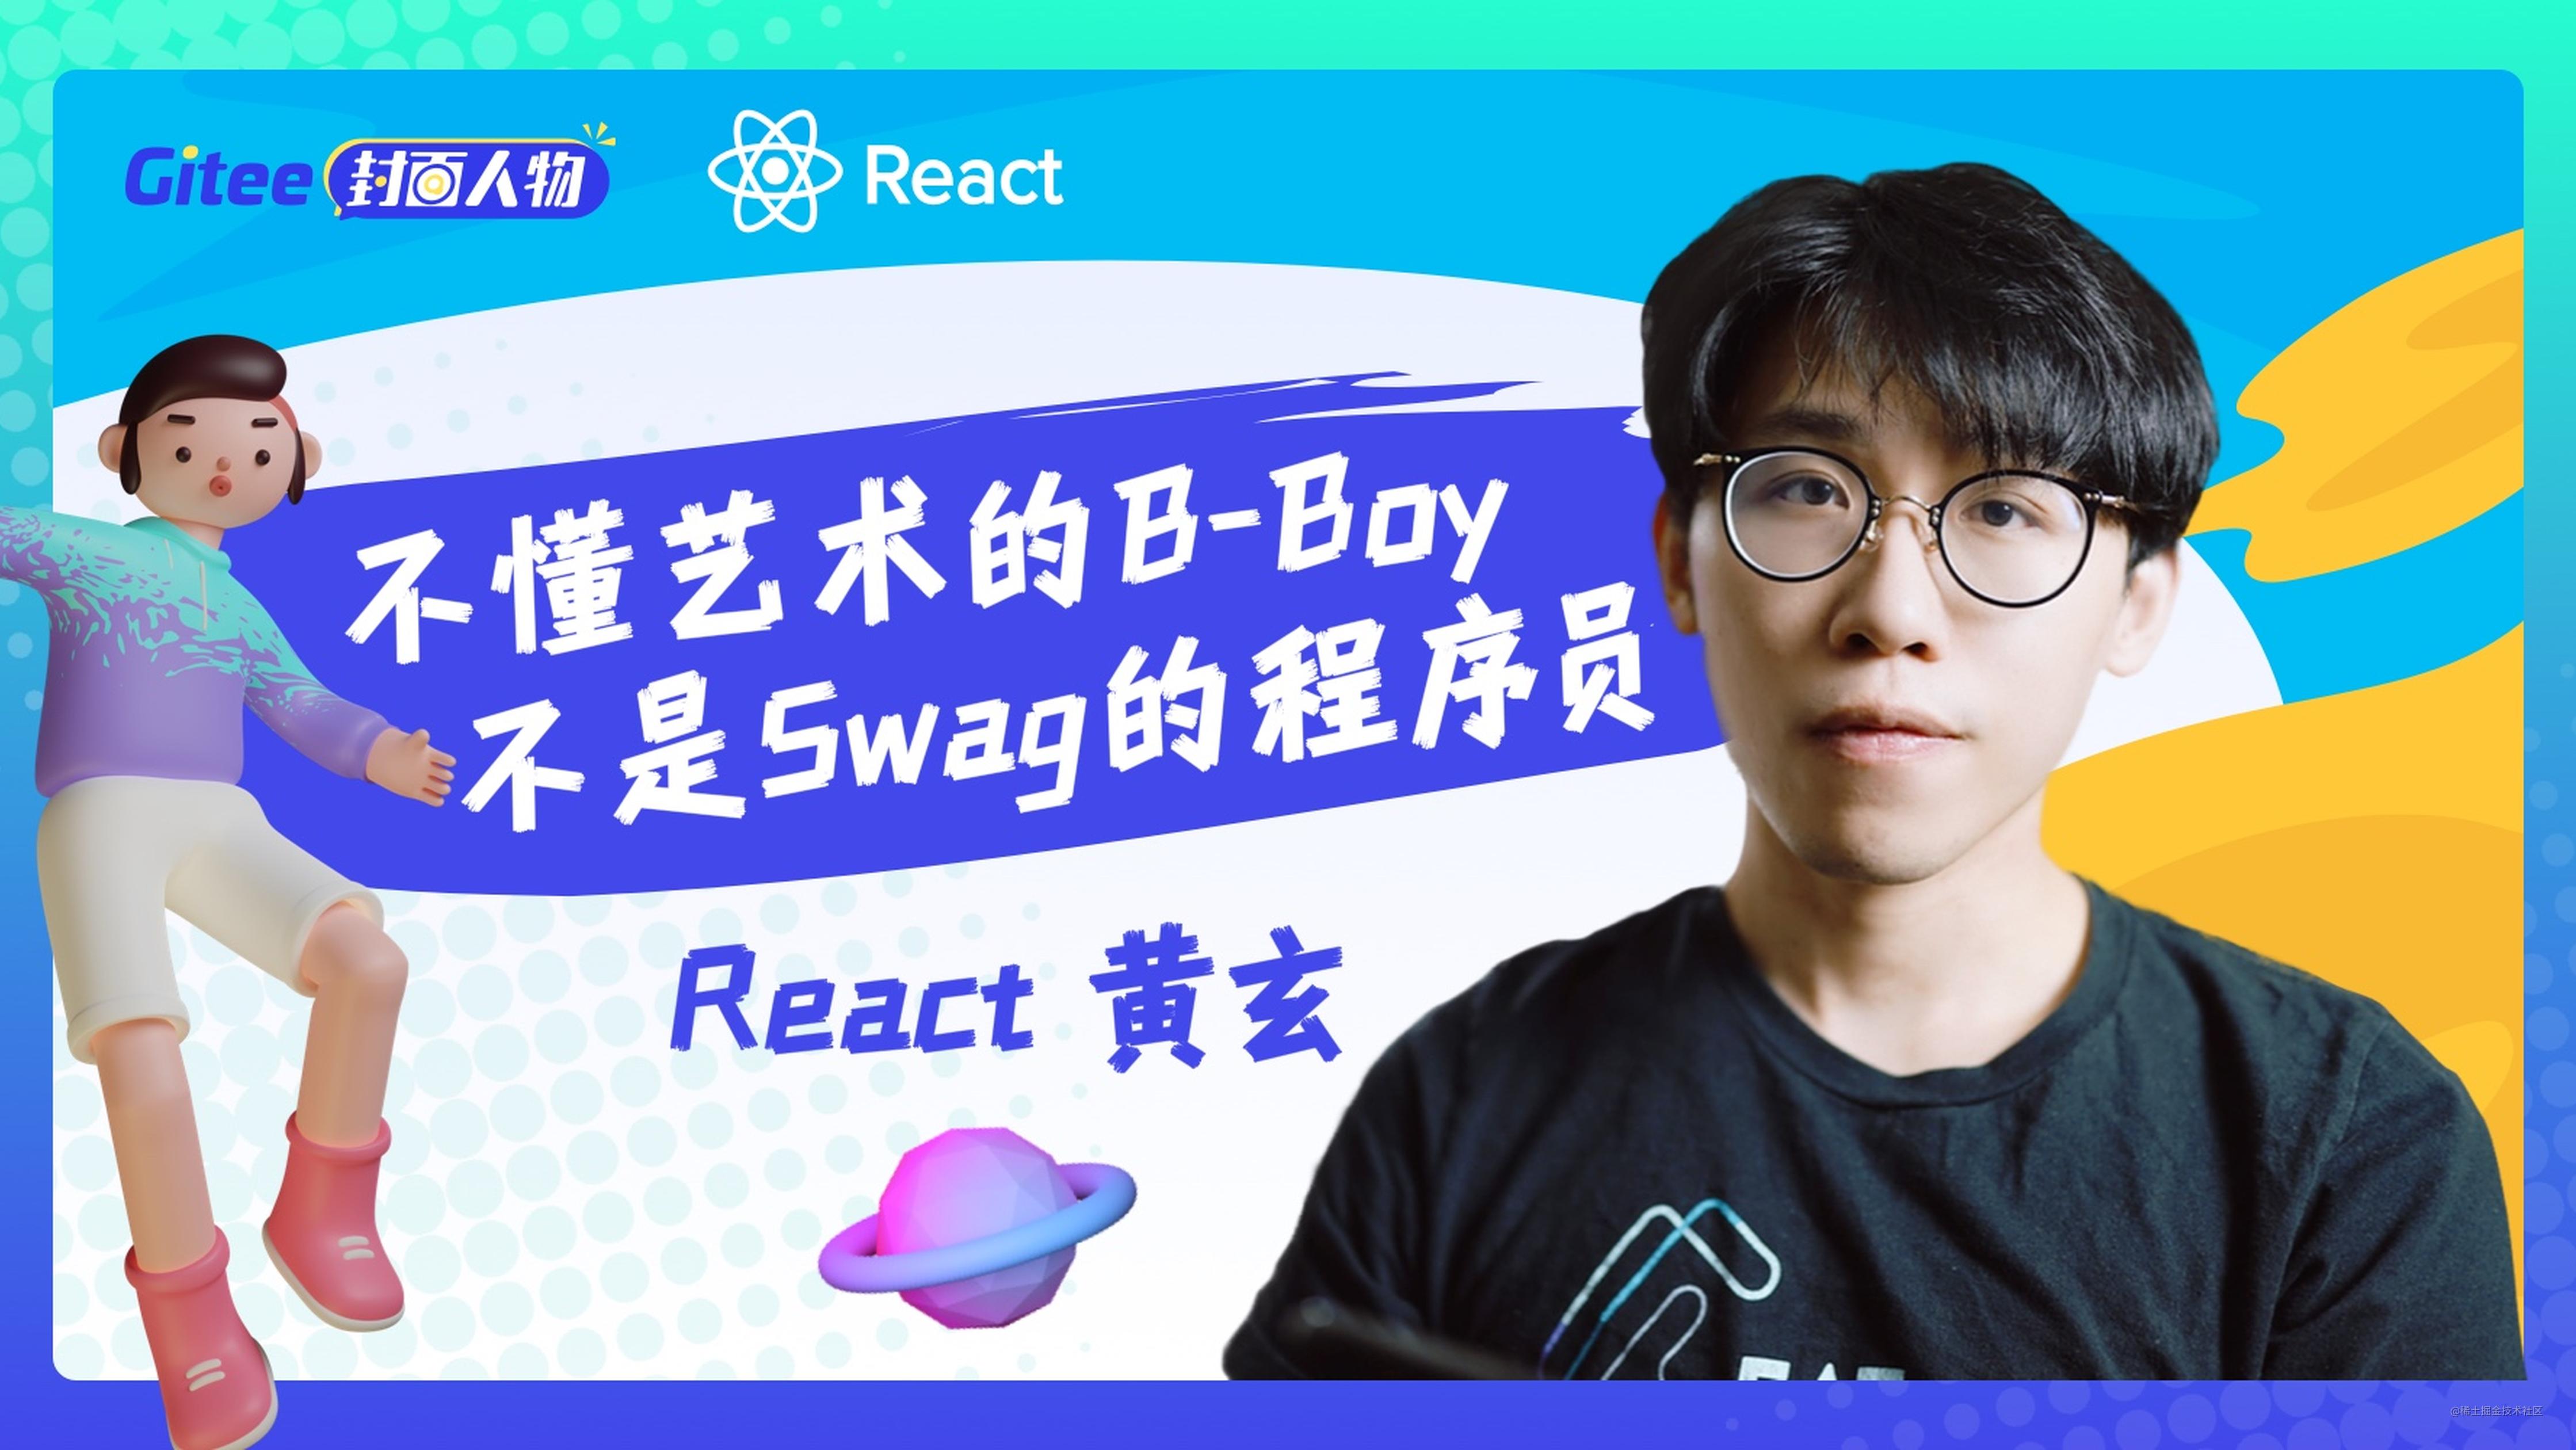 React 黄玄：不懂艺术的 B-Boy 不是 Swag 的程序员